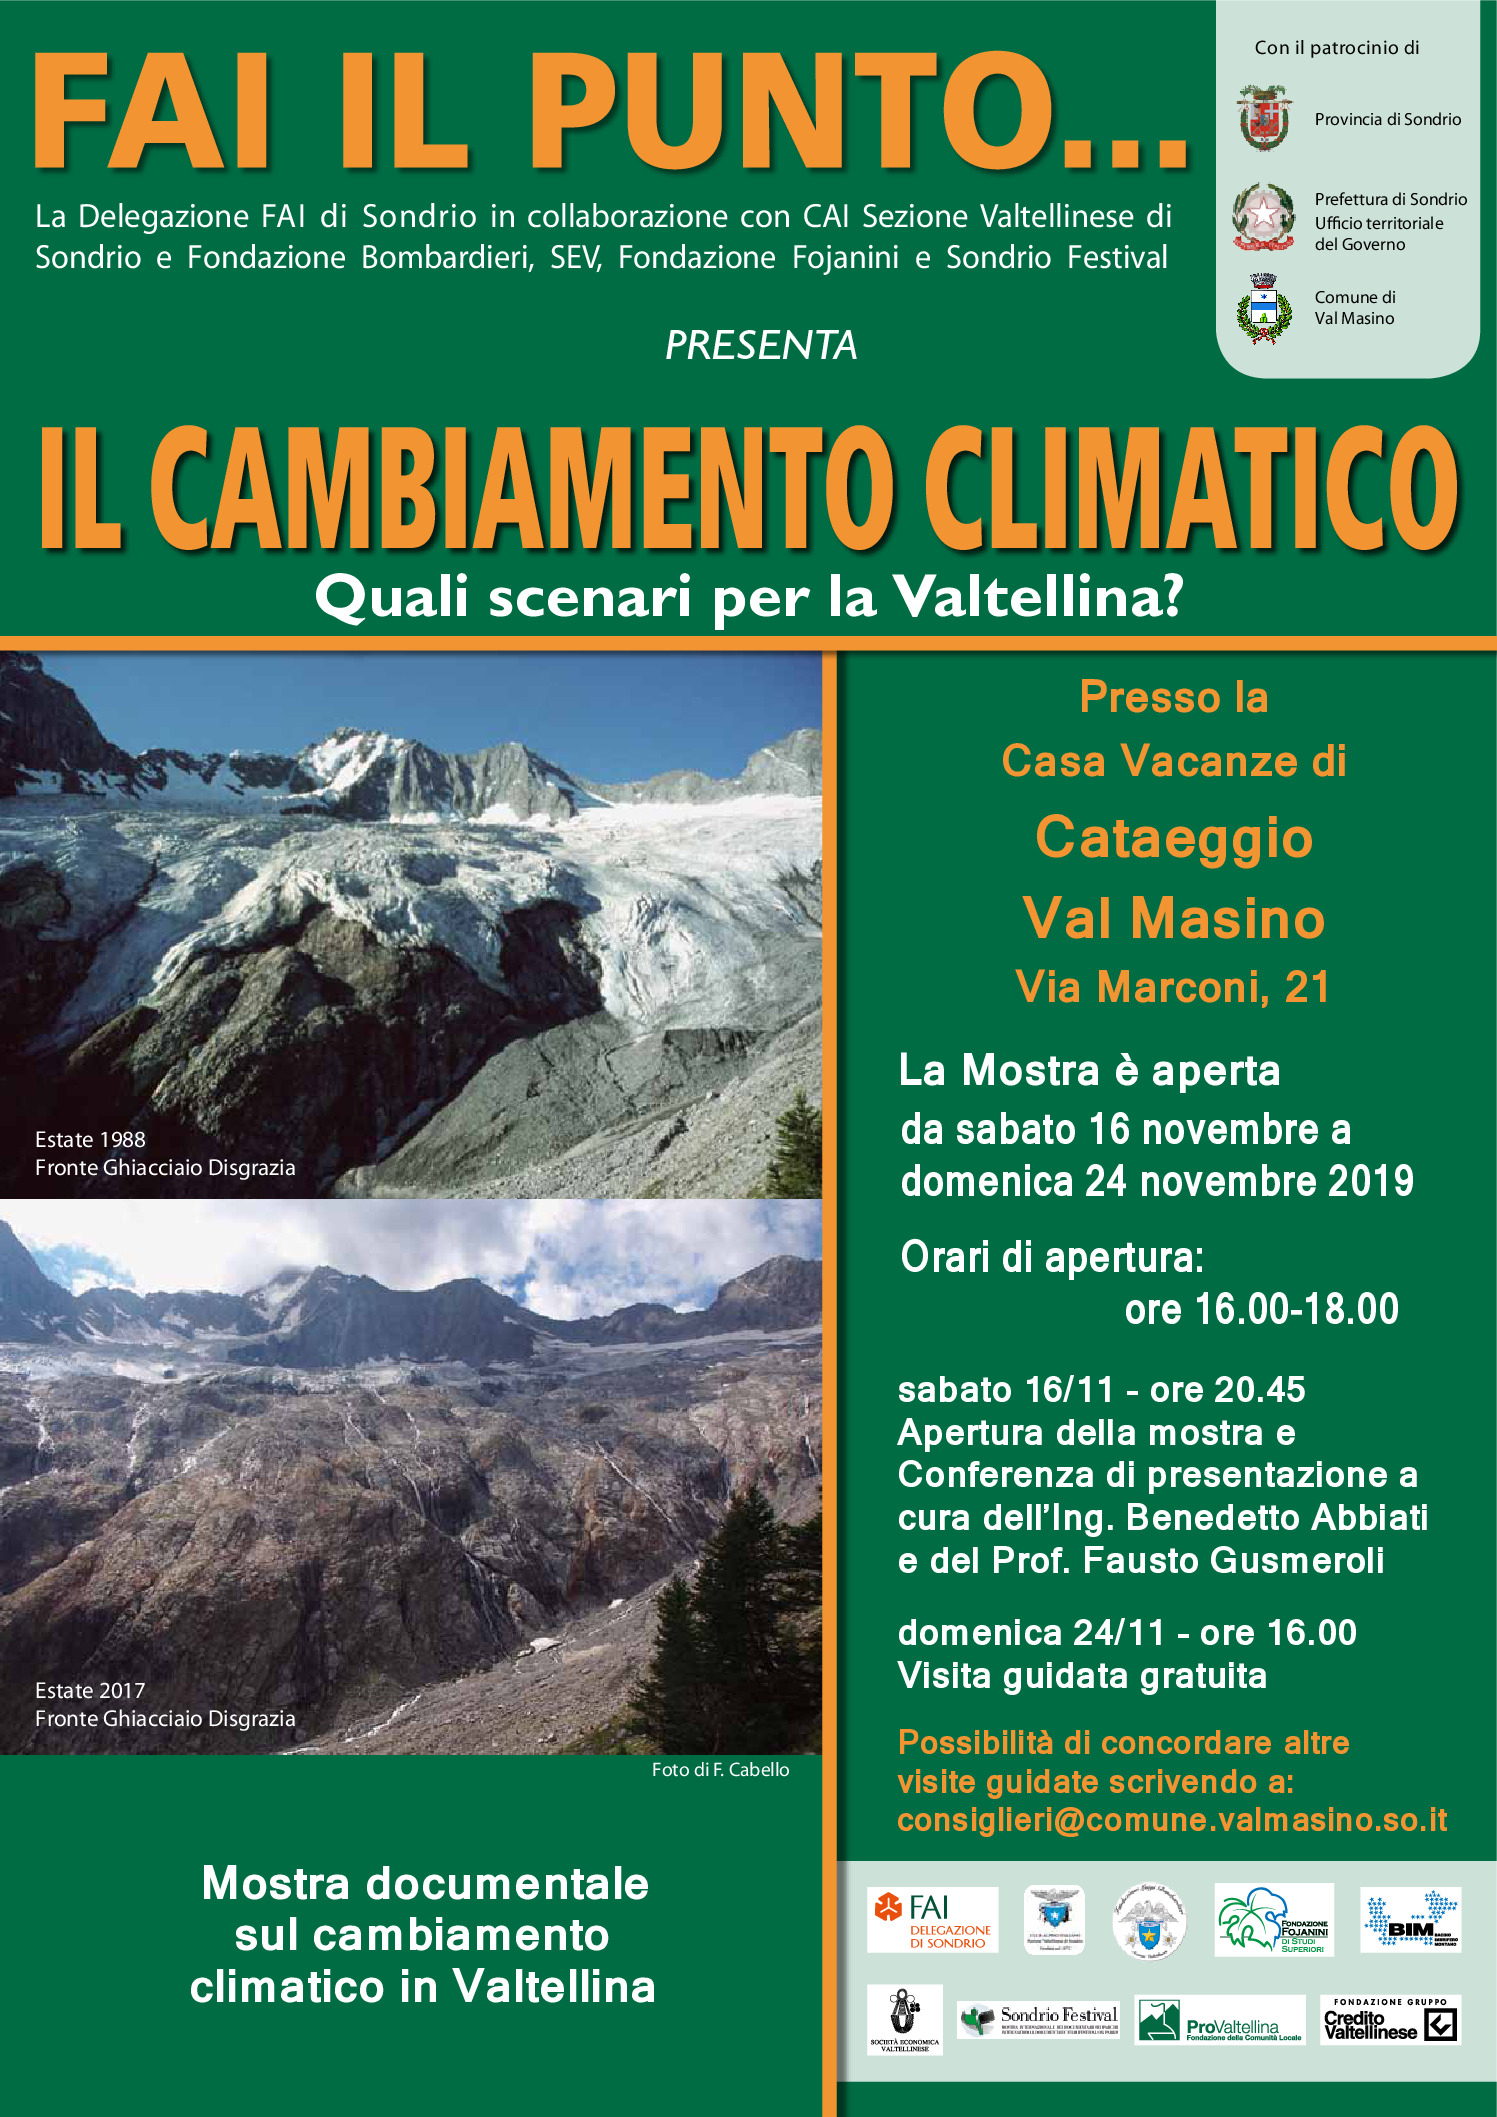 VAL MASINO – MOSTRA DOCUMENTALE “IL CAMBIAMENTO CLIMATICO IN VALTELLINA”